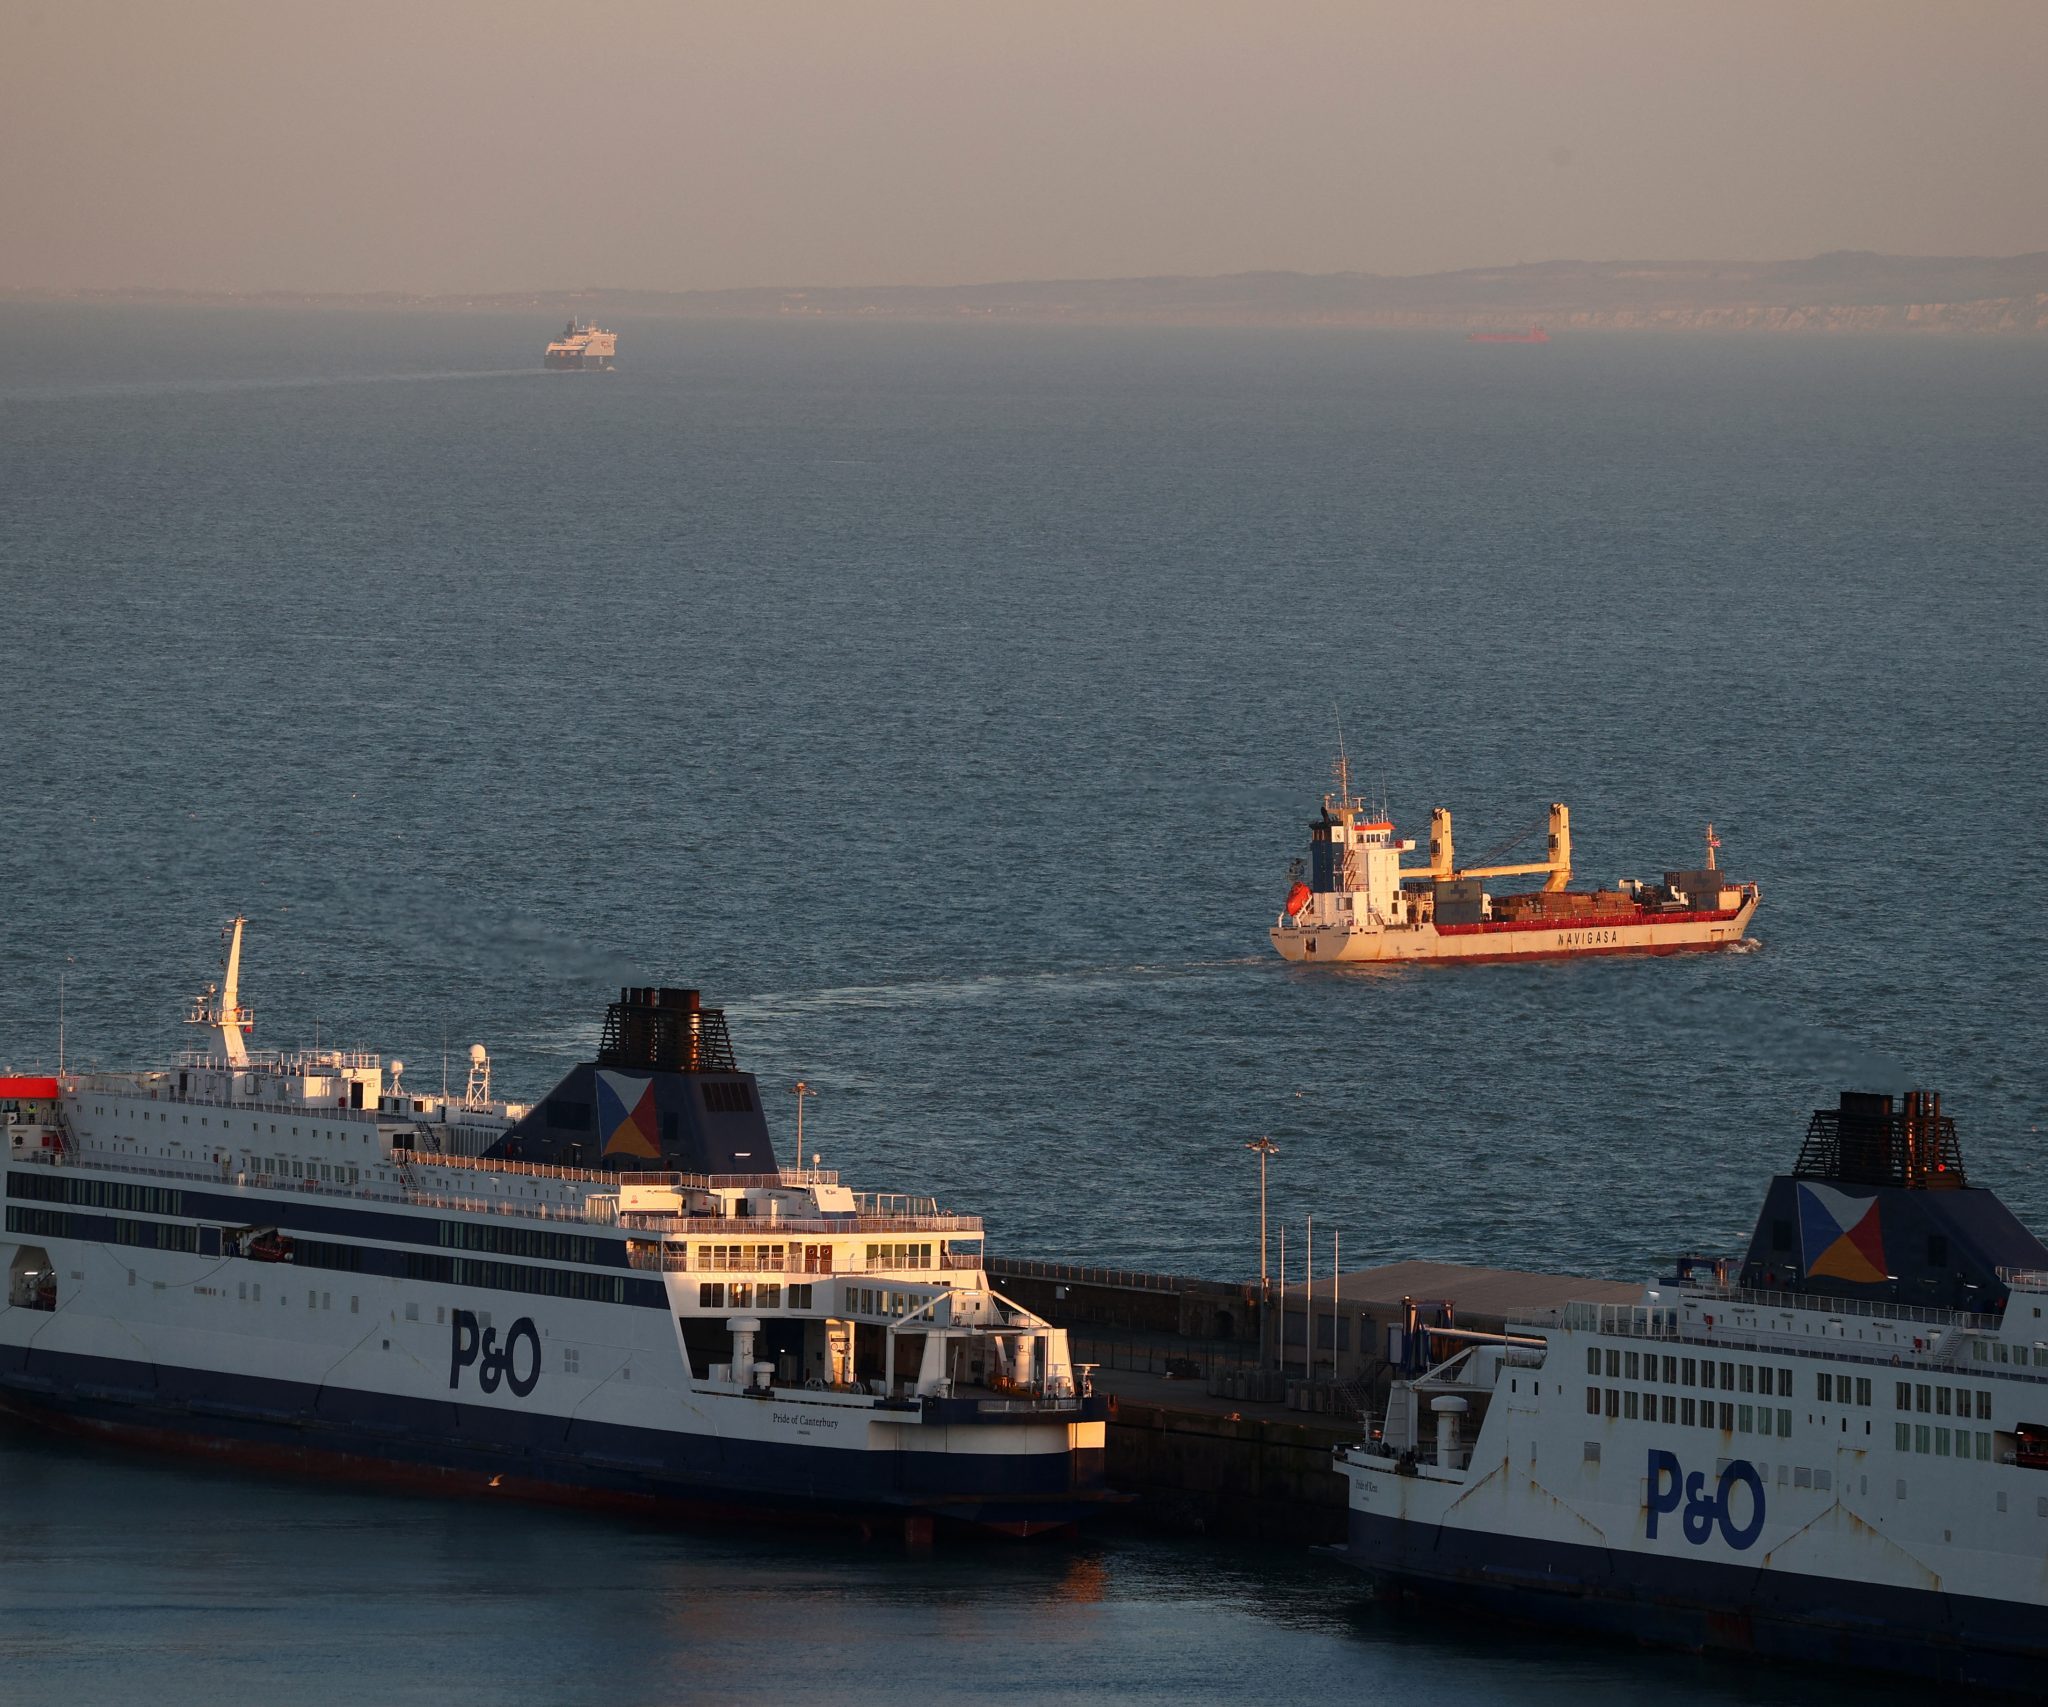 De Pride of Canterbury en Pride of Kent zijn afgemeerd bij de Cruise Terminals in Dover aan de zuidoostkust van Engeland, op 17 maart 2022. Foto ANP